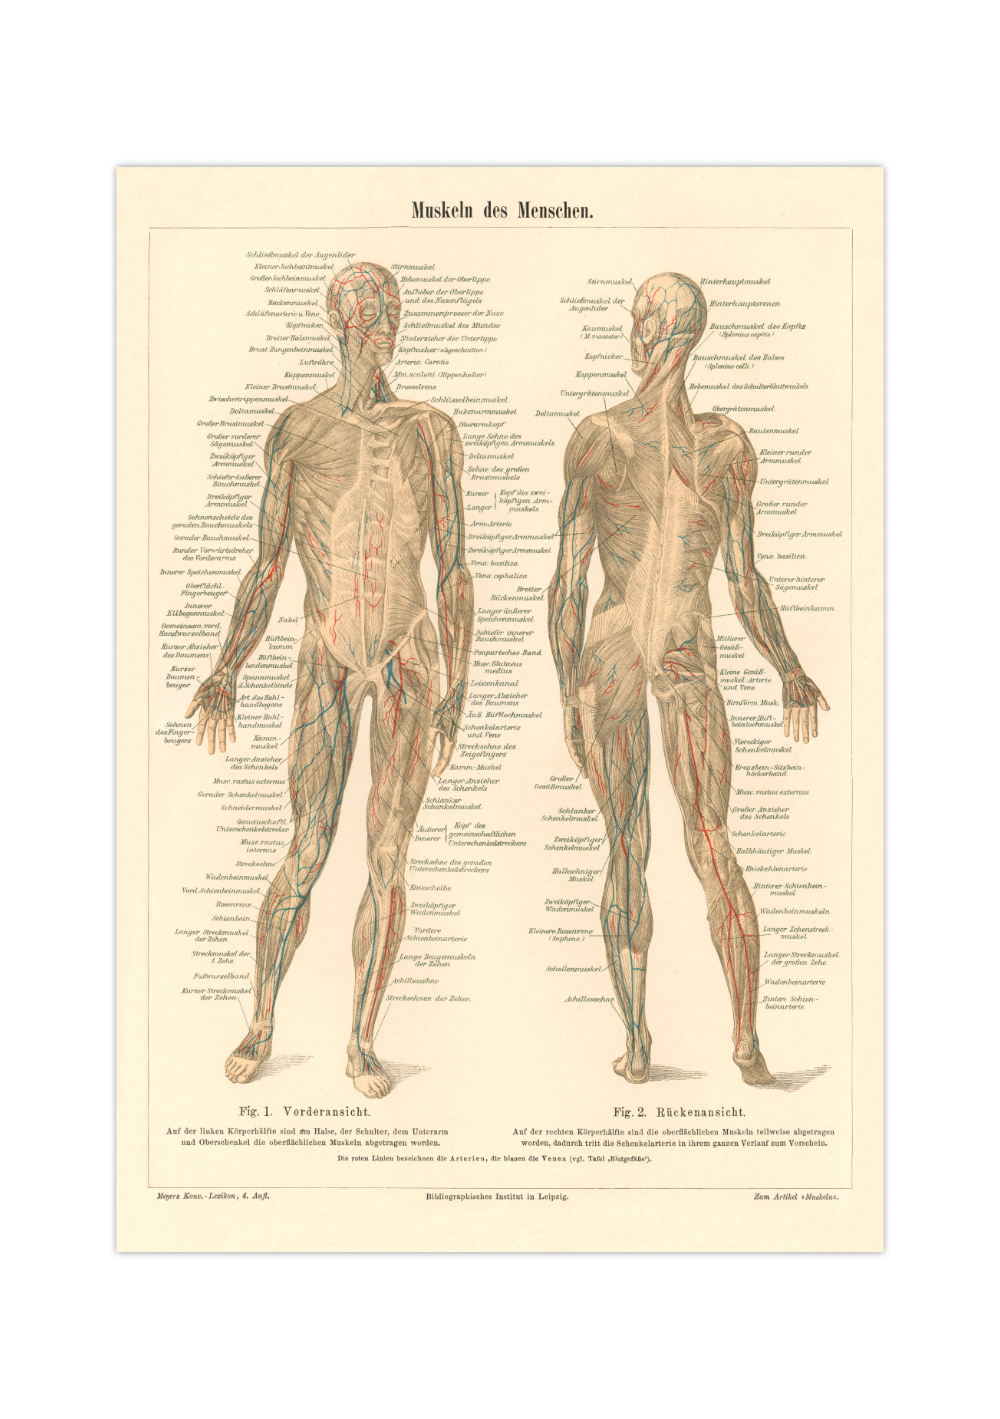 Das medizinische Poster der Muskeln des Menschen ist eine Vintage Lithographie aus Meyers Koversations-Lexikon aus dem Jahr 1890. 